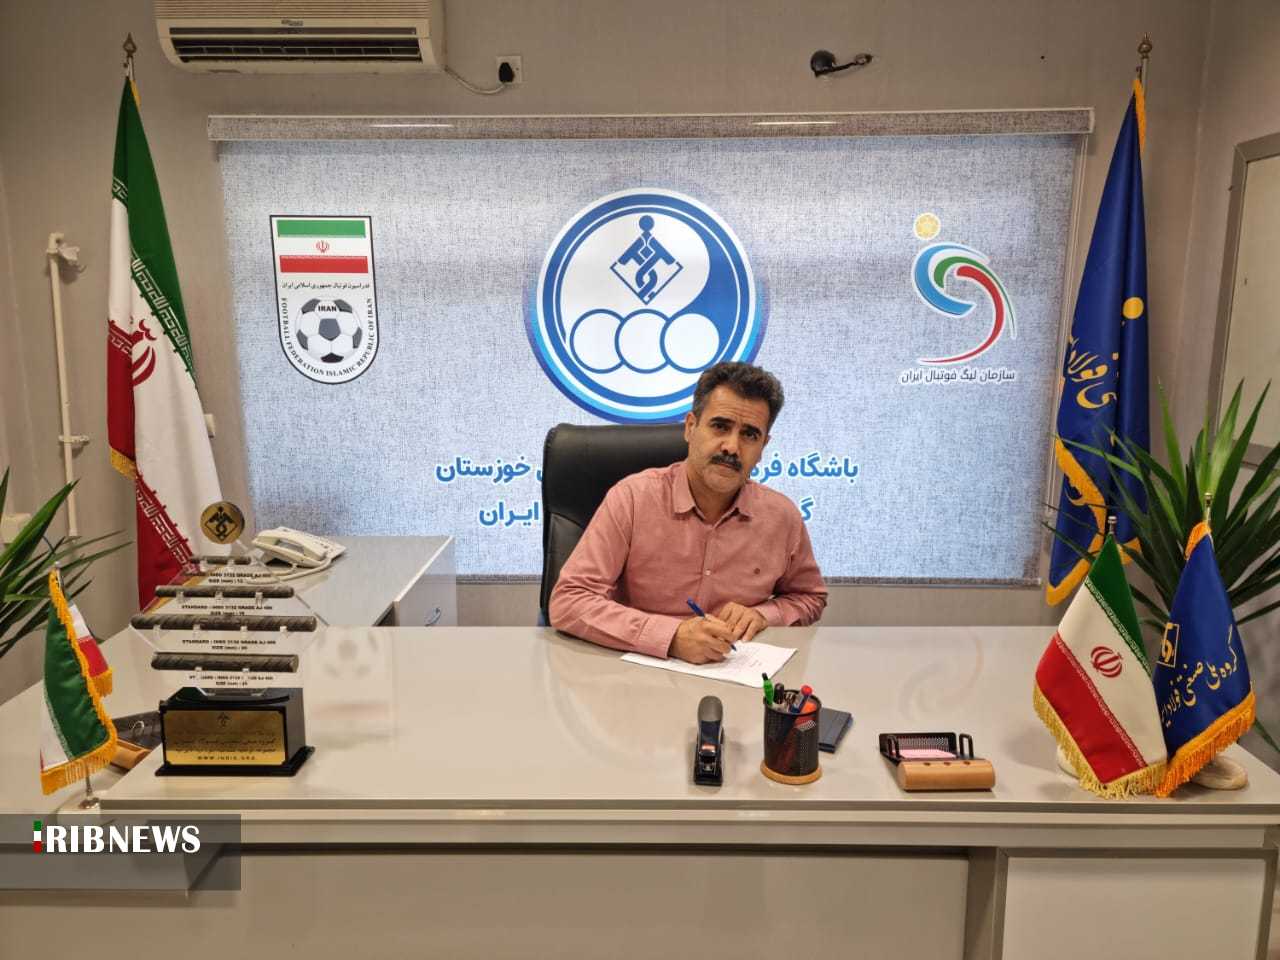 بازگشت پورموسوی به استقلال خوزستان